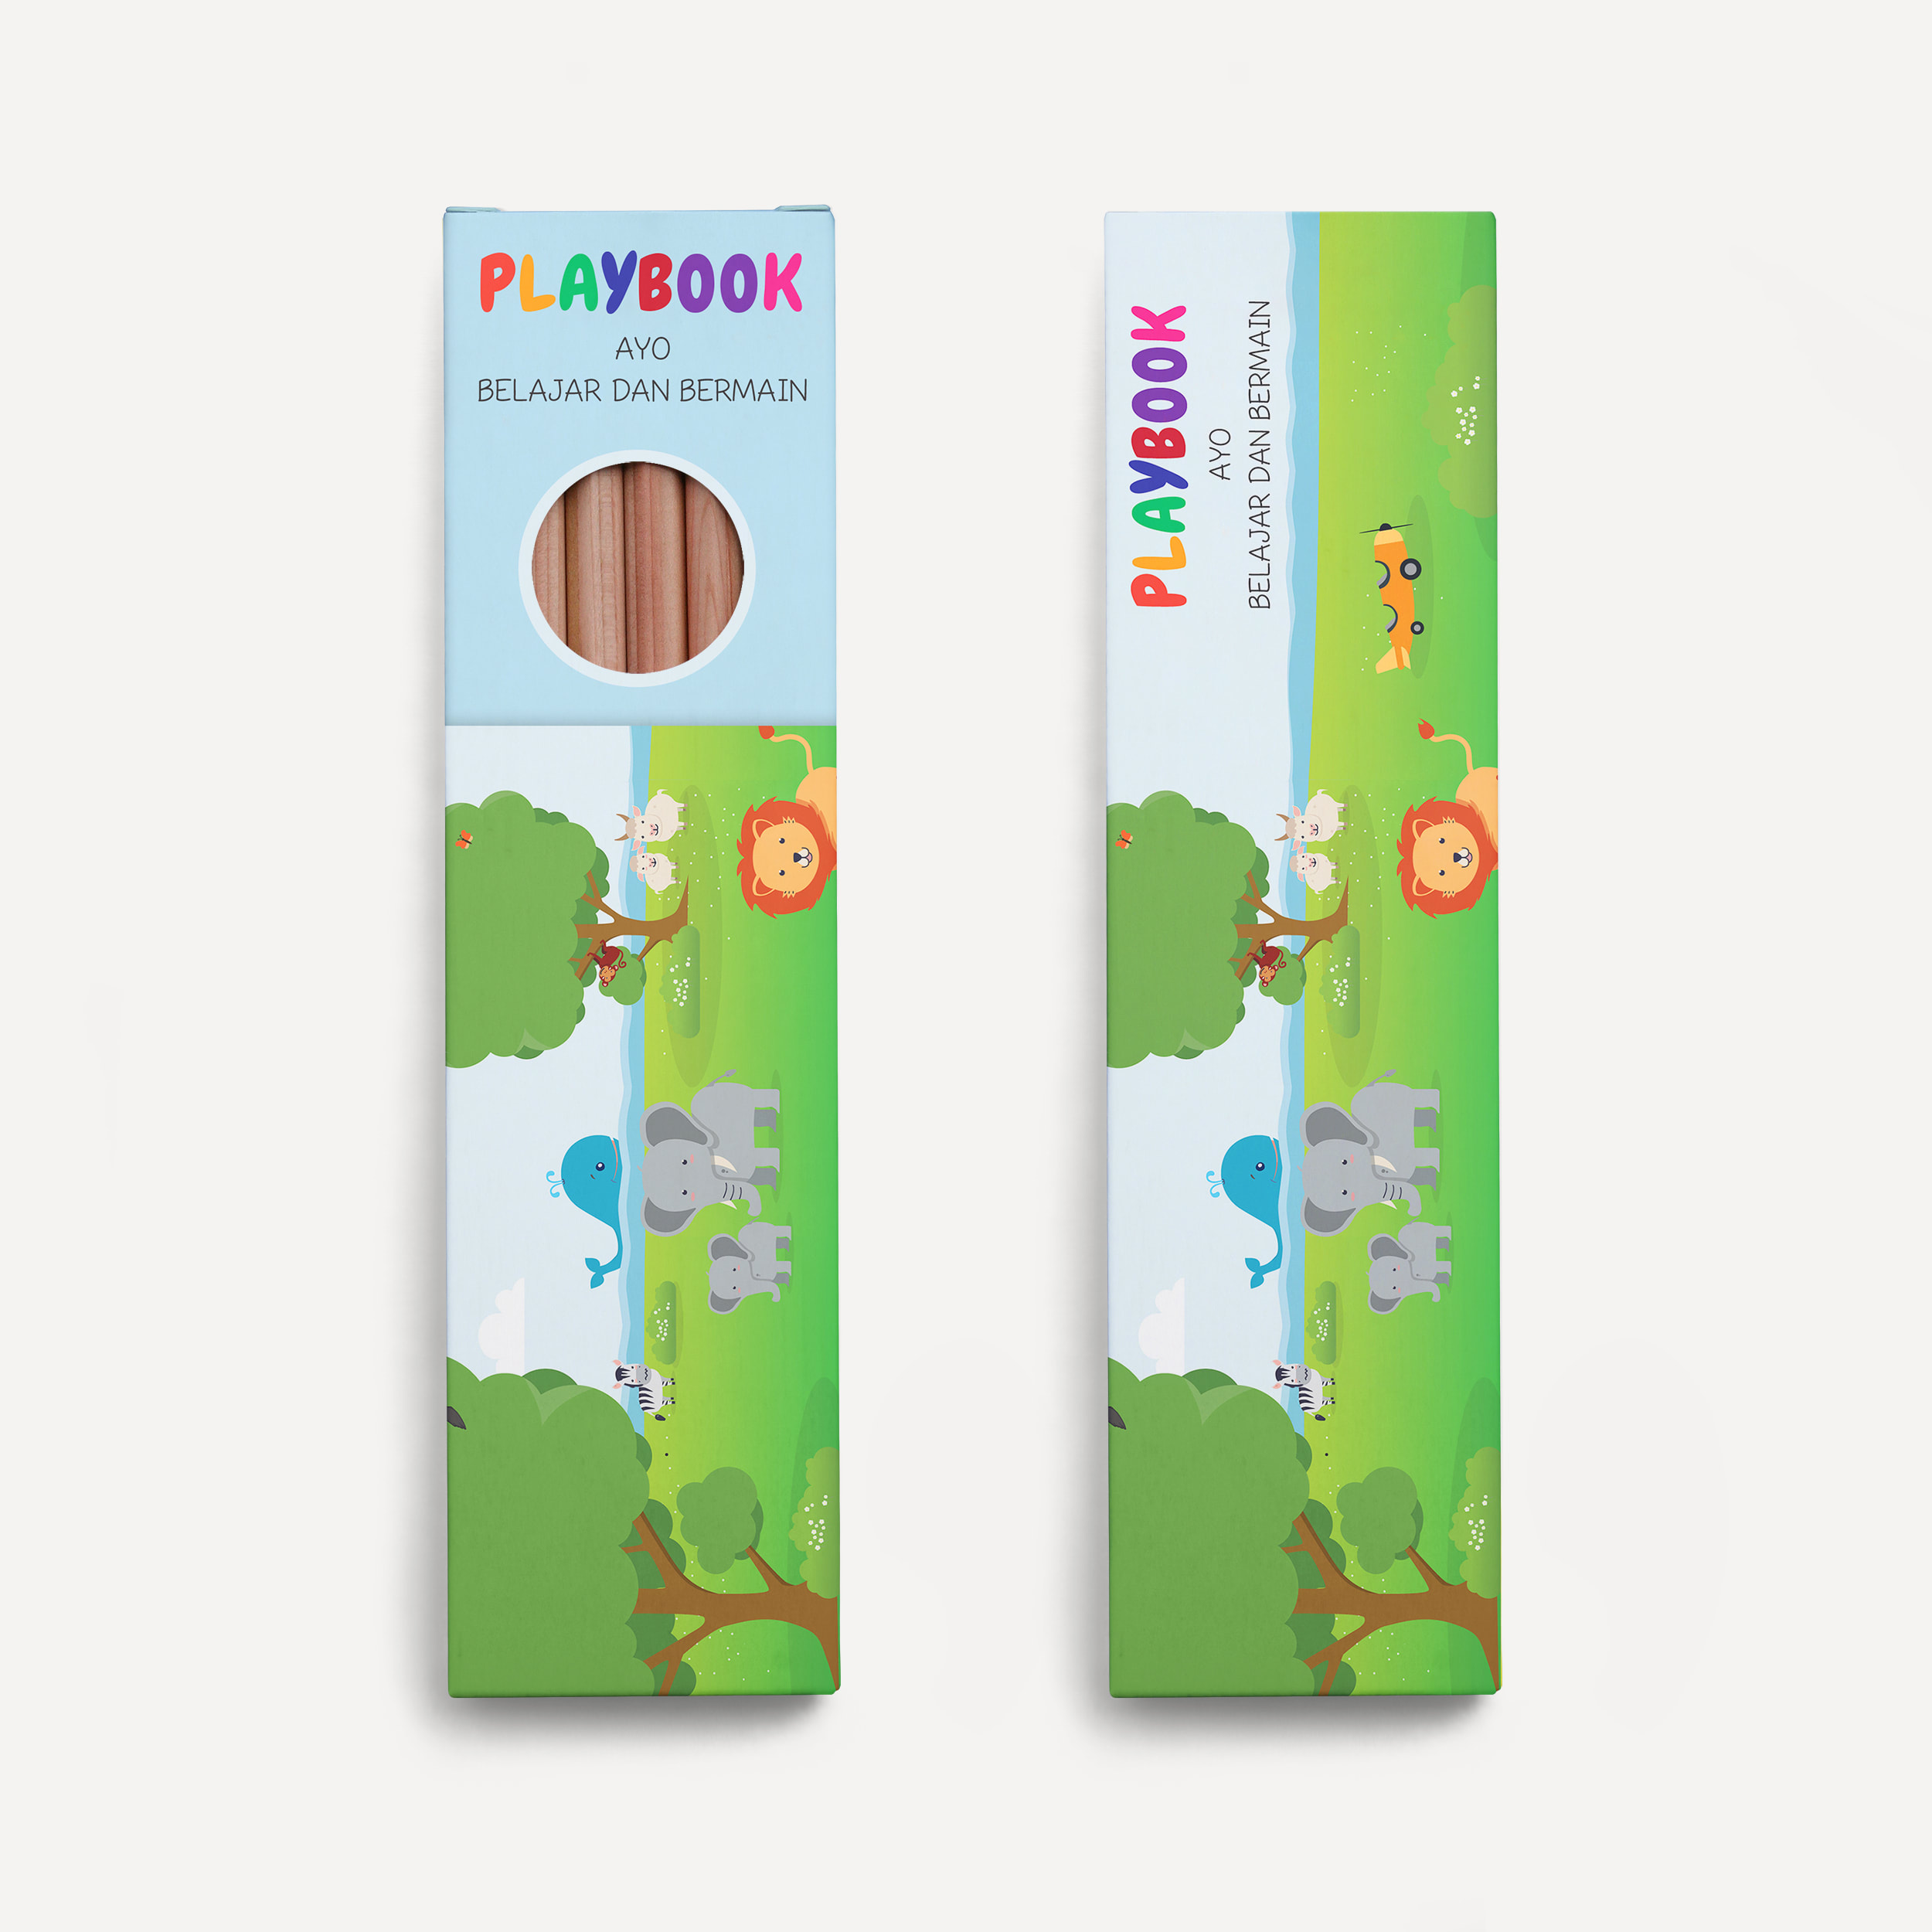 Download Design Minimalist 3d Packaging Mockup Design By Emasharahap Fiverr